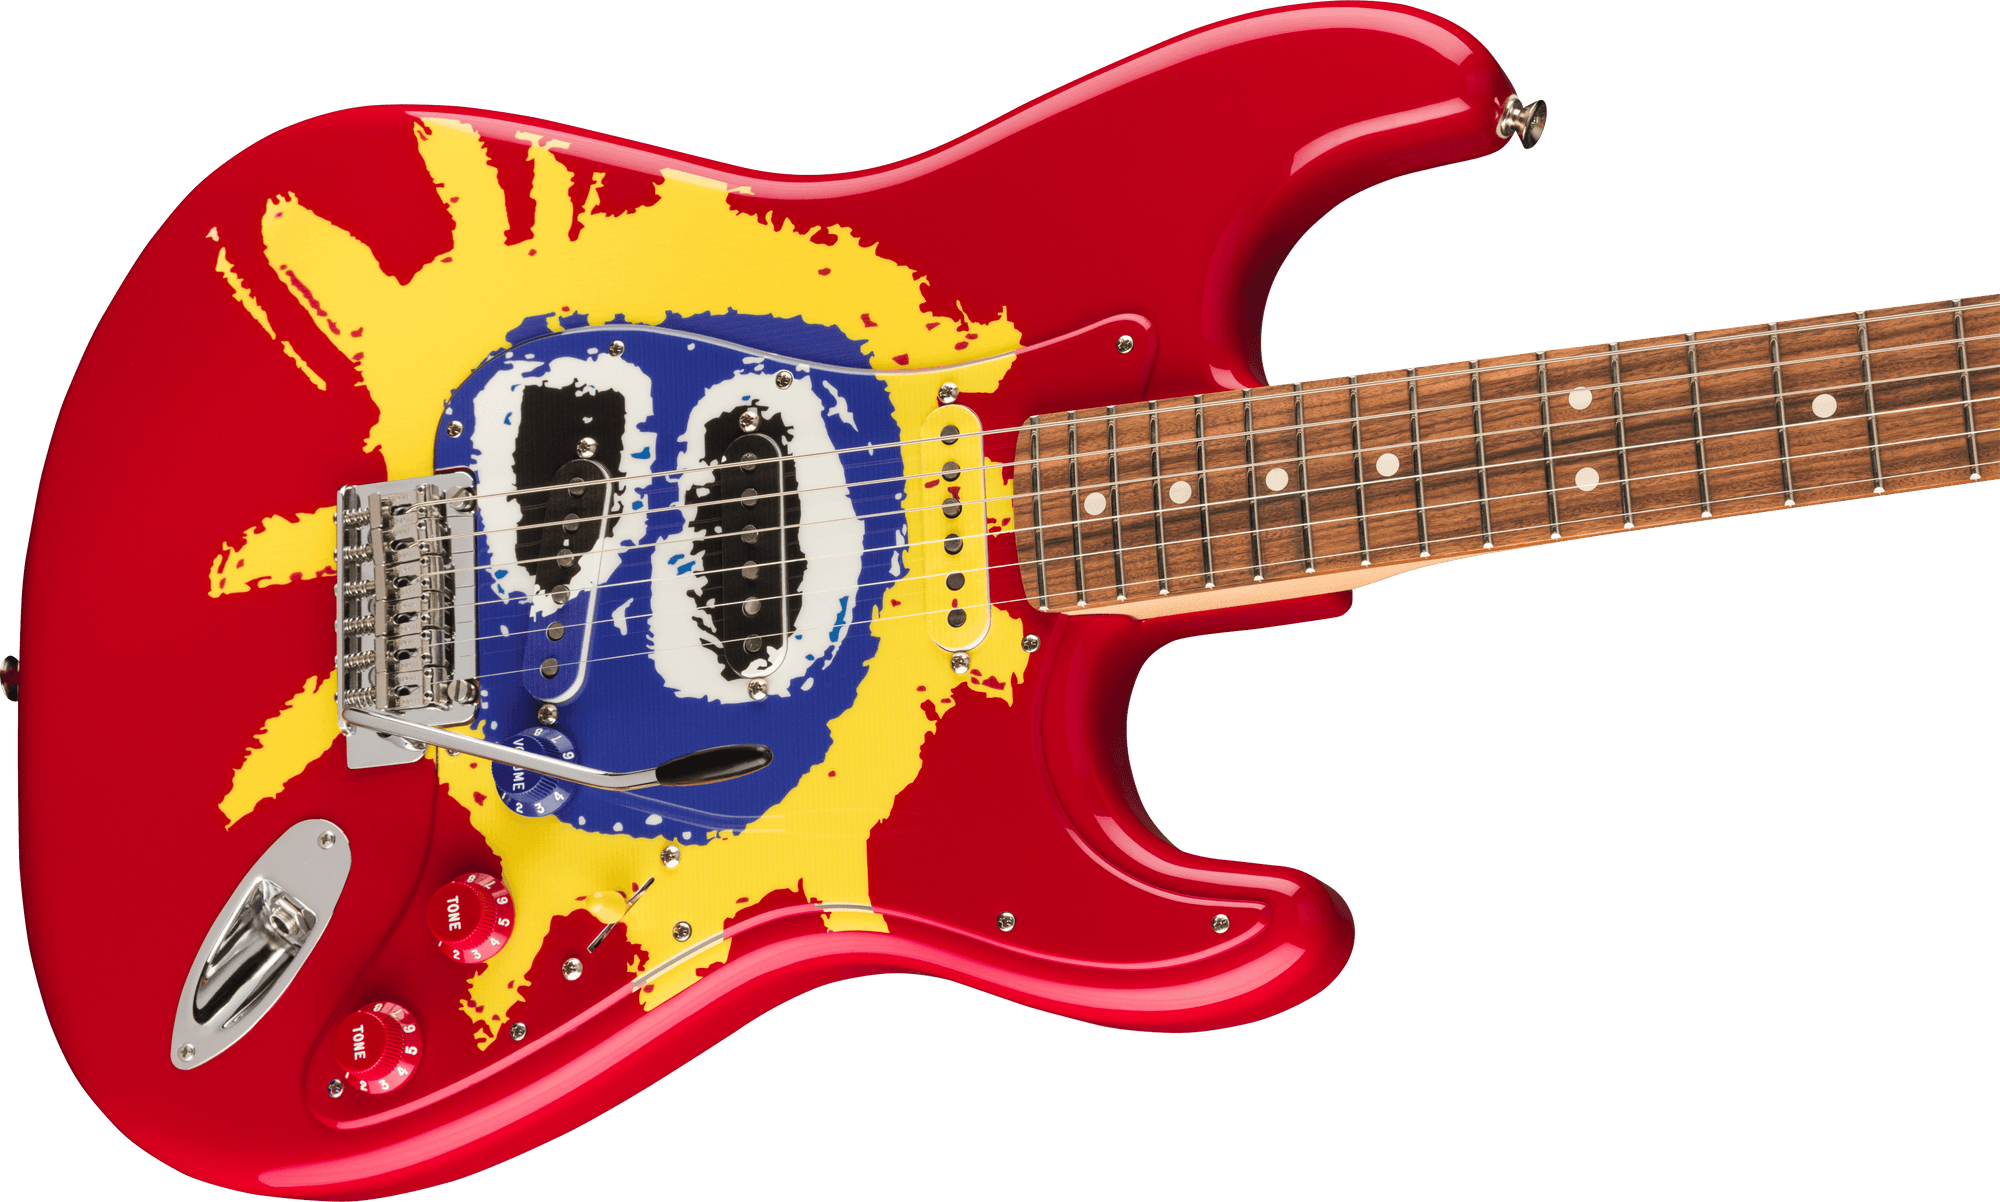 30th Anniversary Screamadelica Stratocaster, Pau Ferro Fingerboard, Custom Graphic